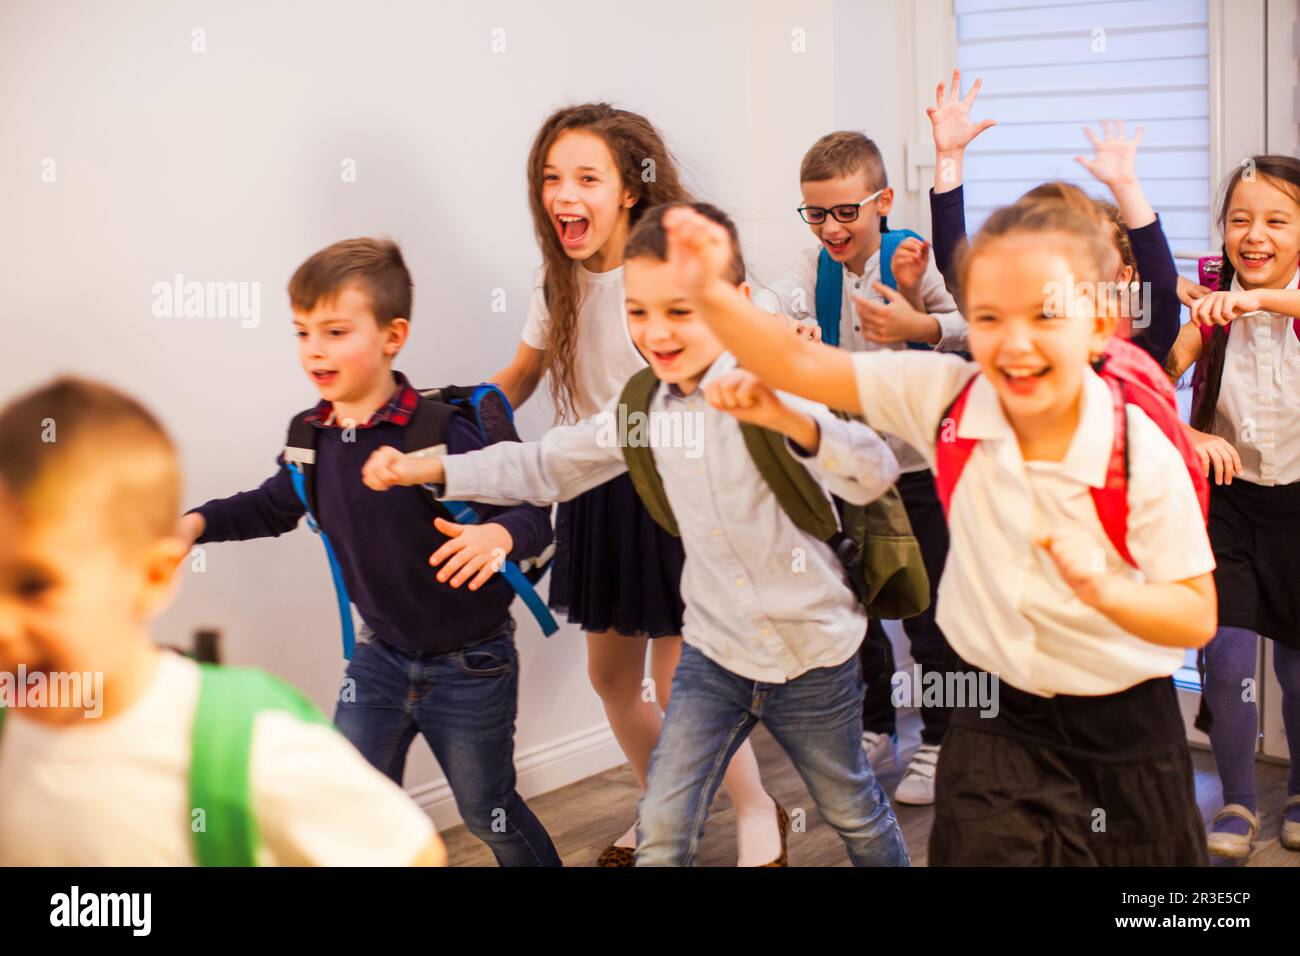 Happy school kids running in elementary school hallway, front view Stock Photo